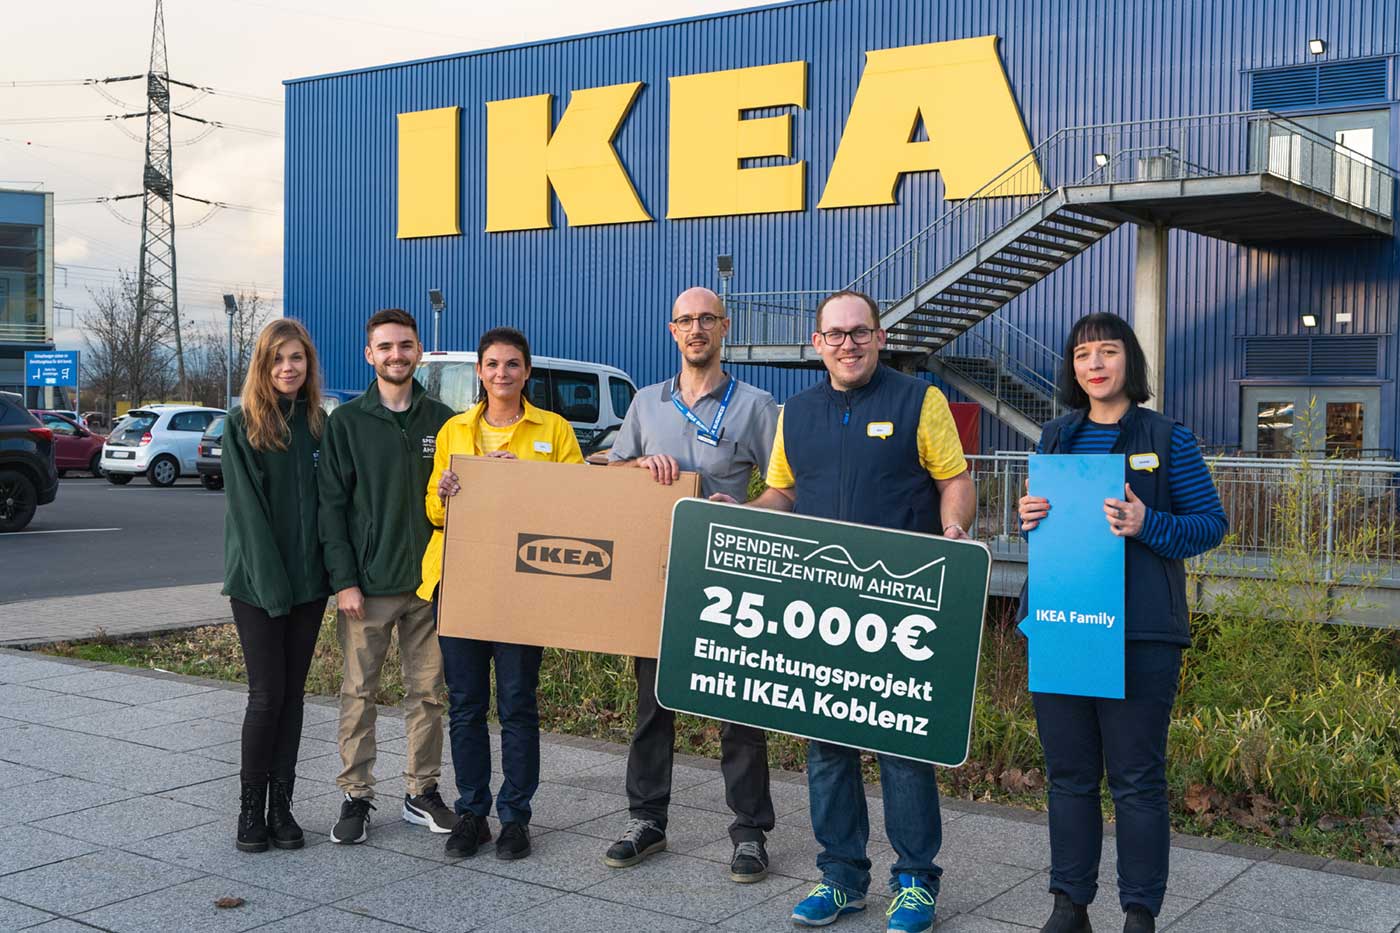 Mitarbeiter des Spenden-Verteilzentrum Ahrtal vor dem IKEA